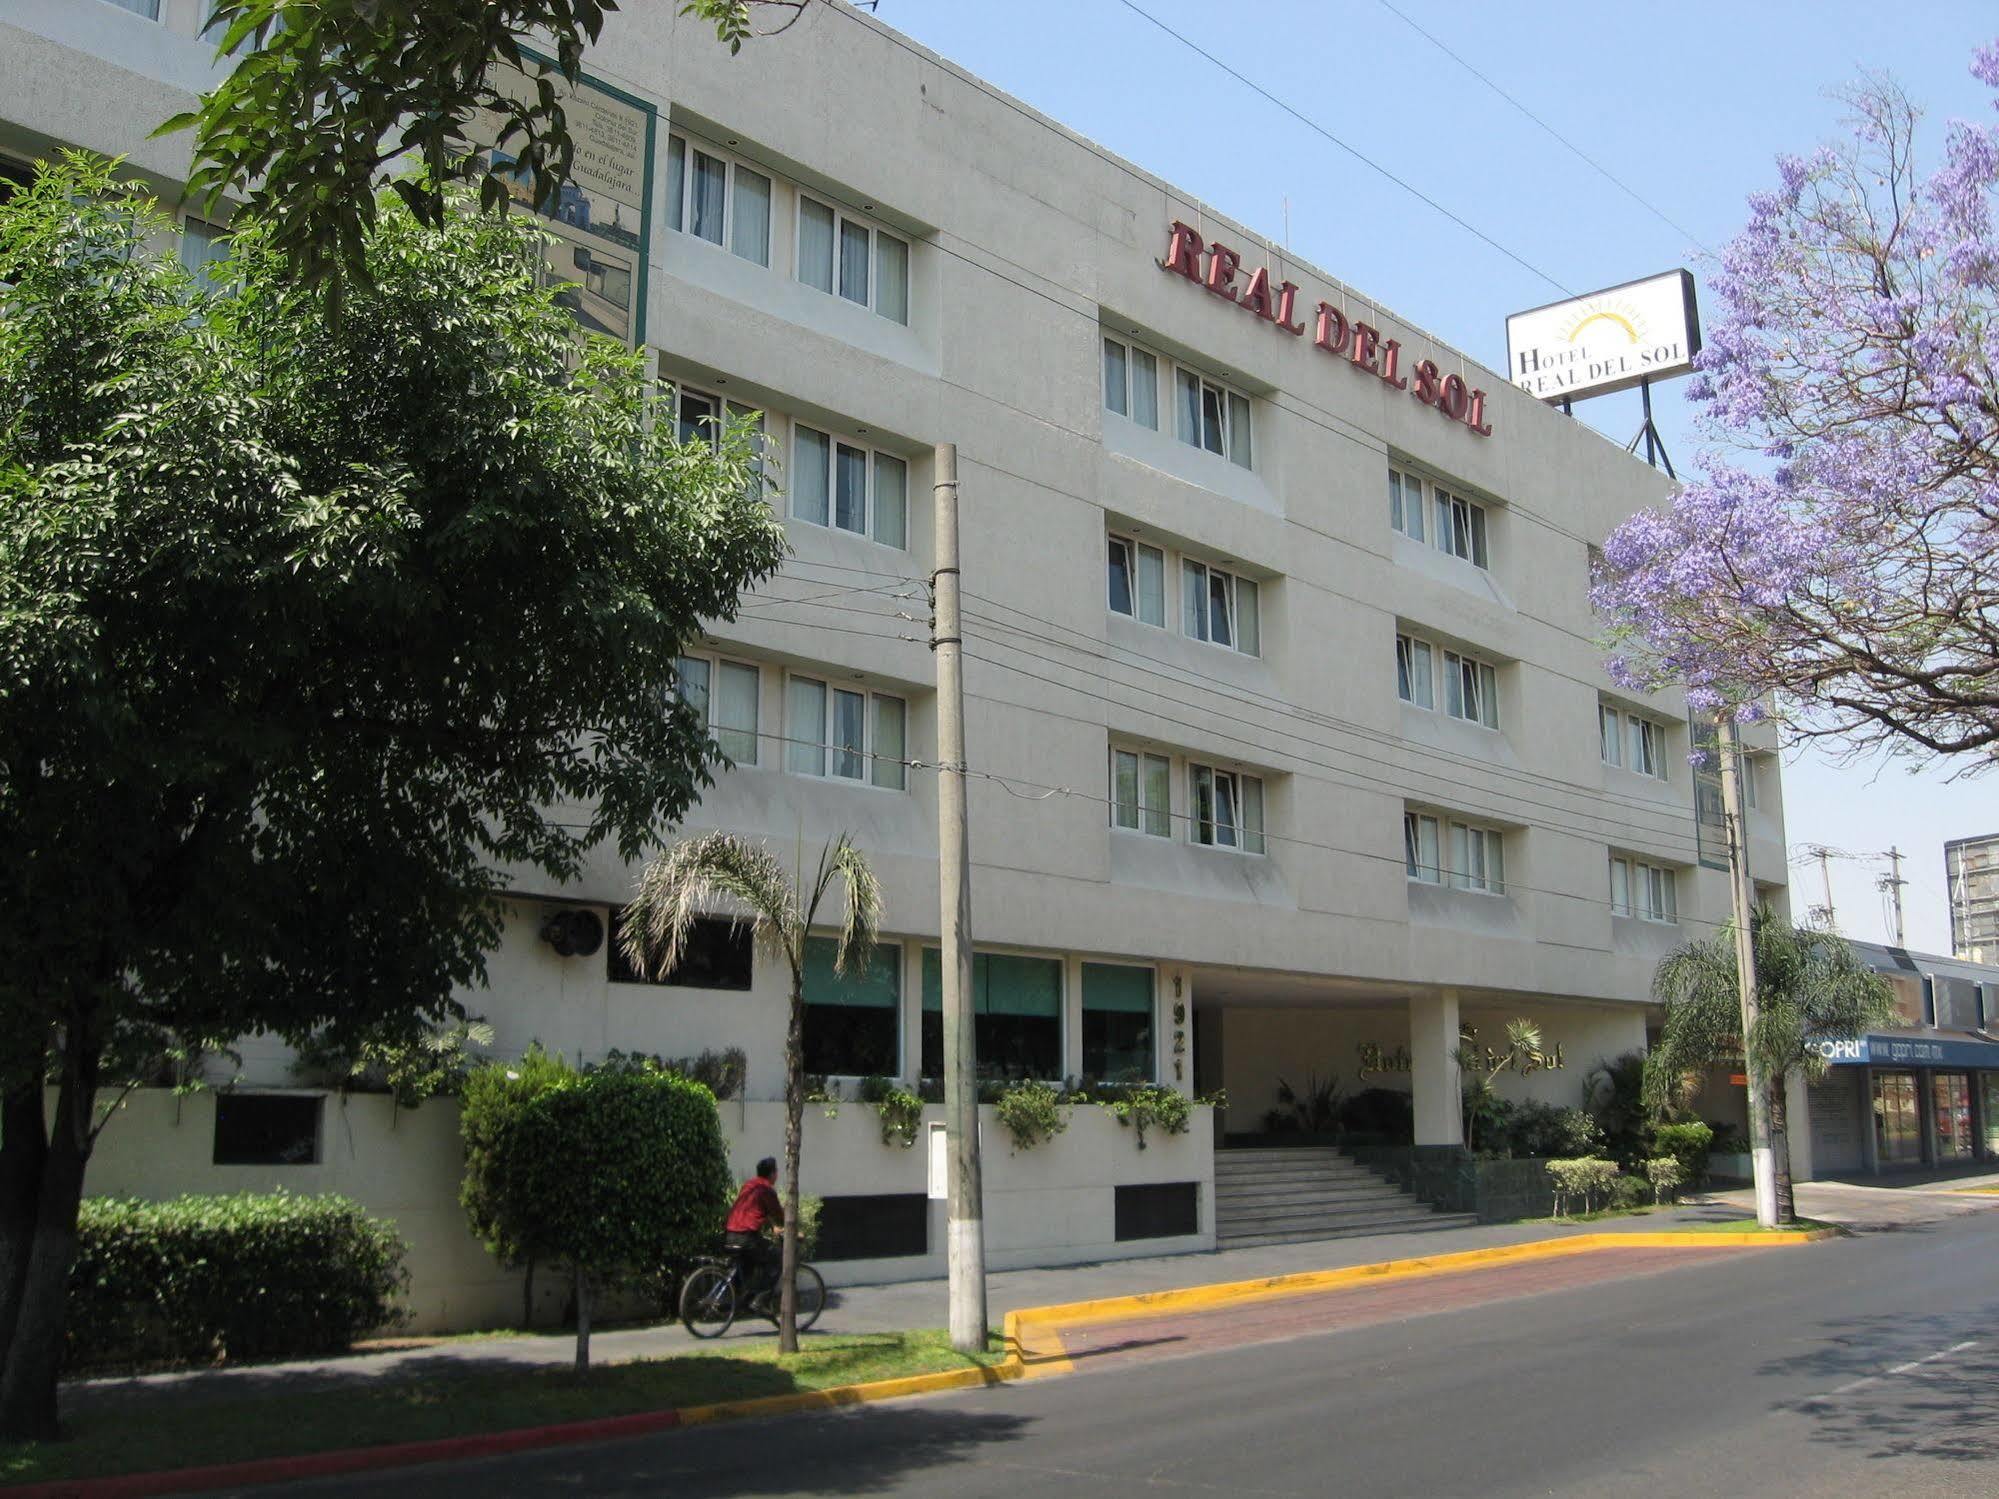 Hotel Real Del Sol - Zona Expo E Industrial Guadalajara Exterior foto